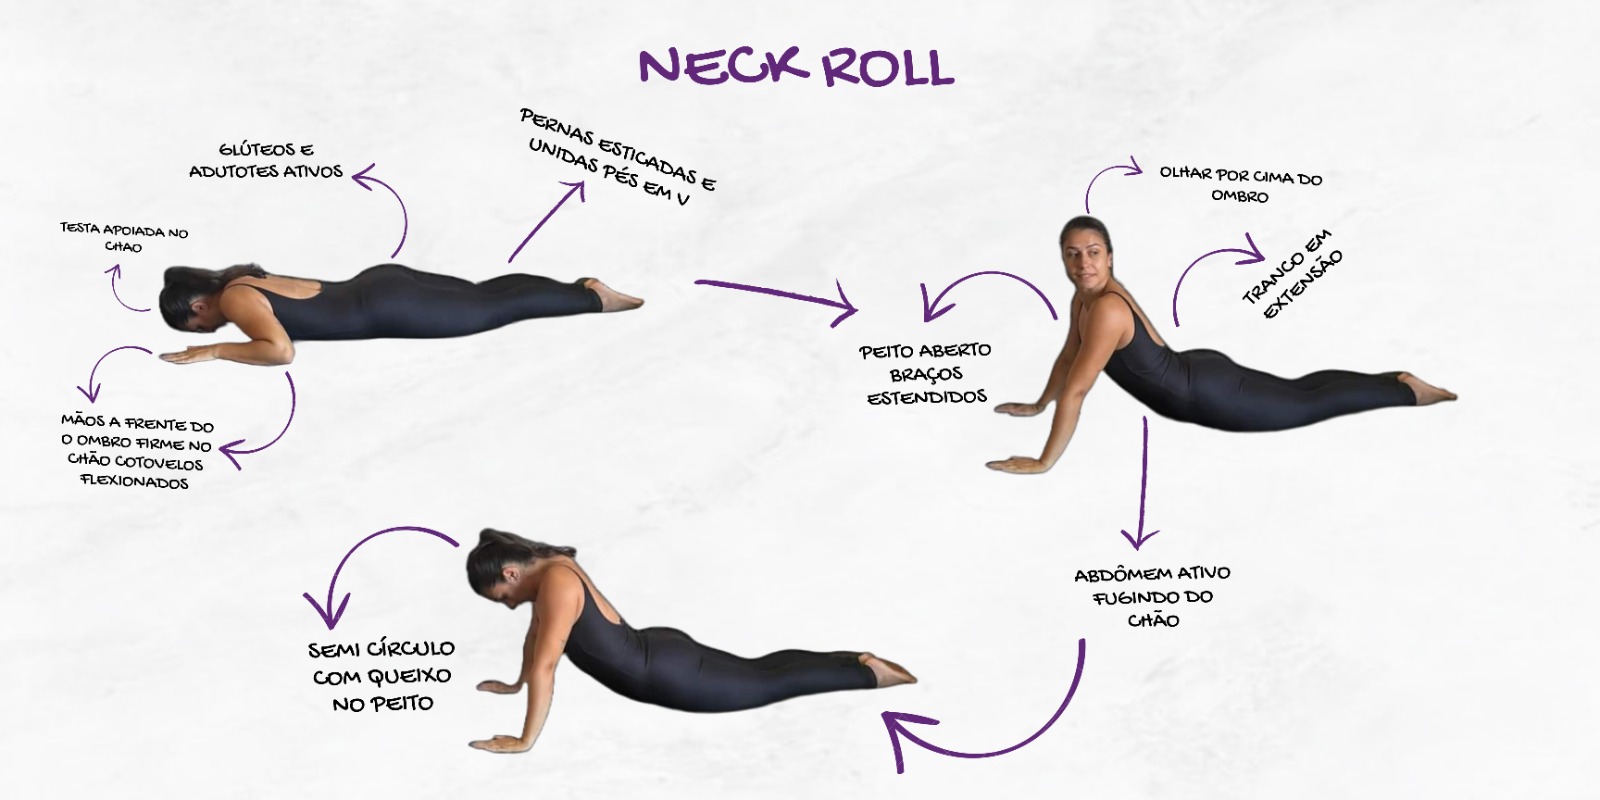 neck roll - exercícios para a coluna